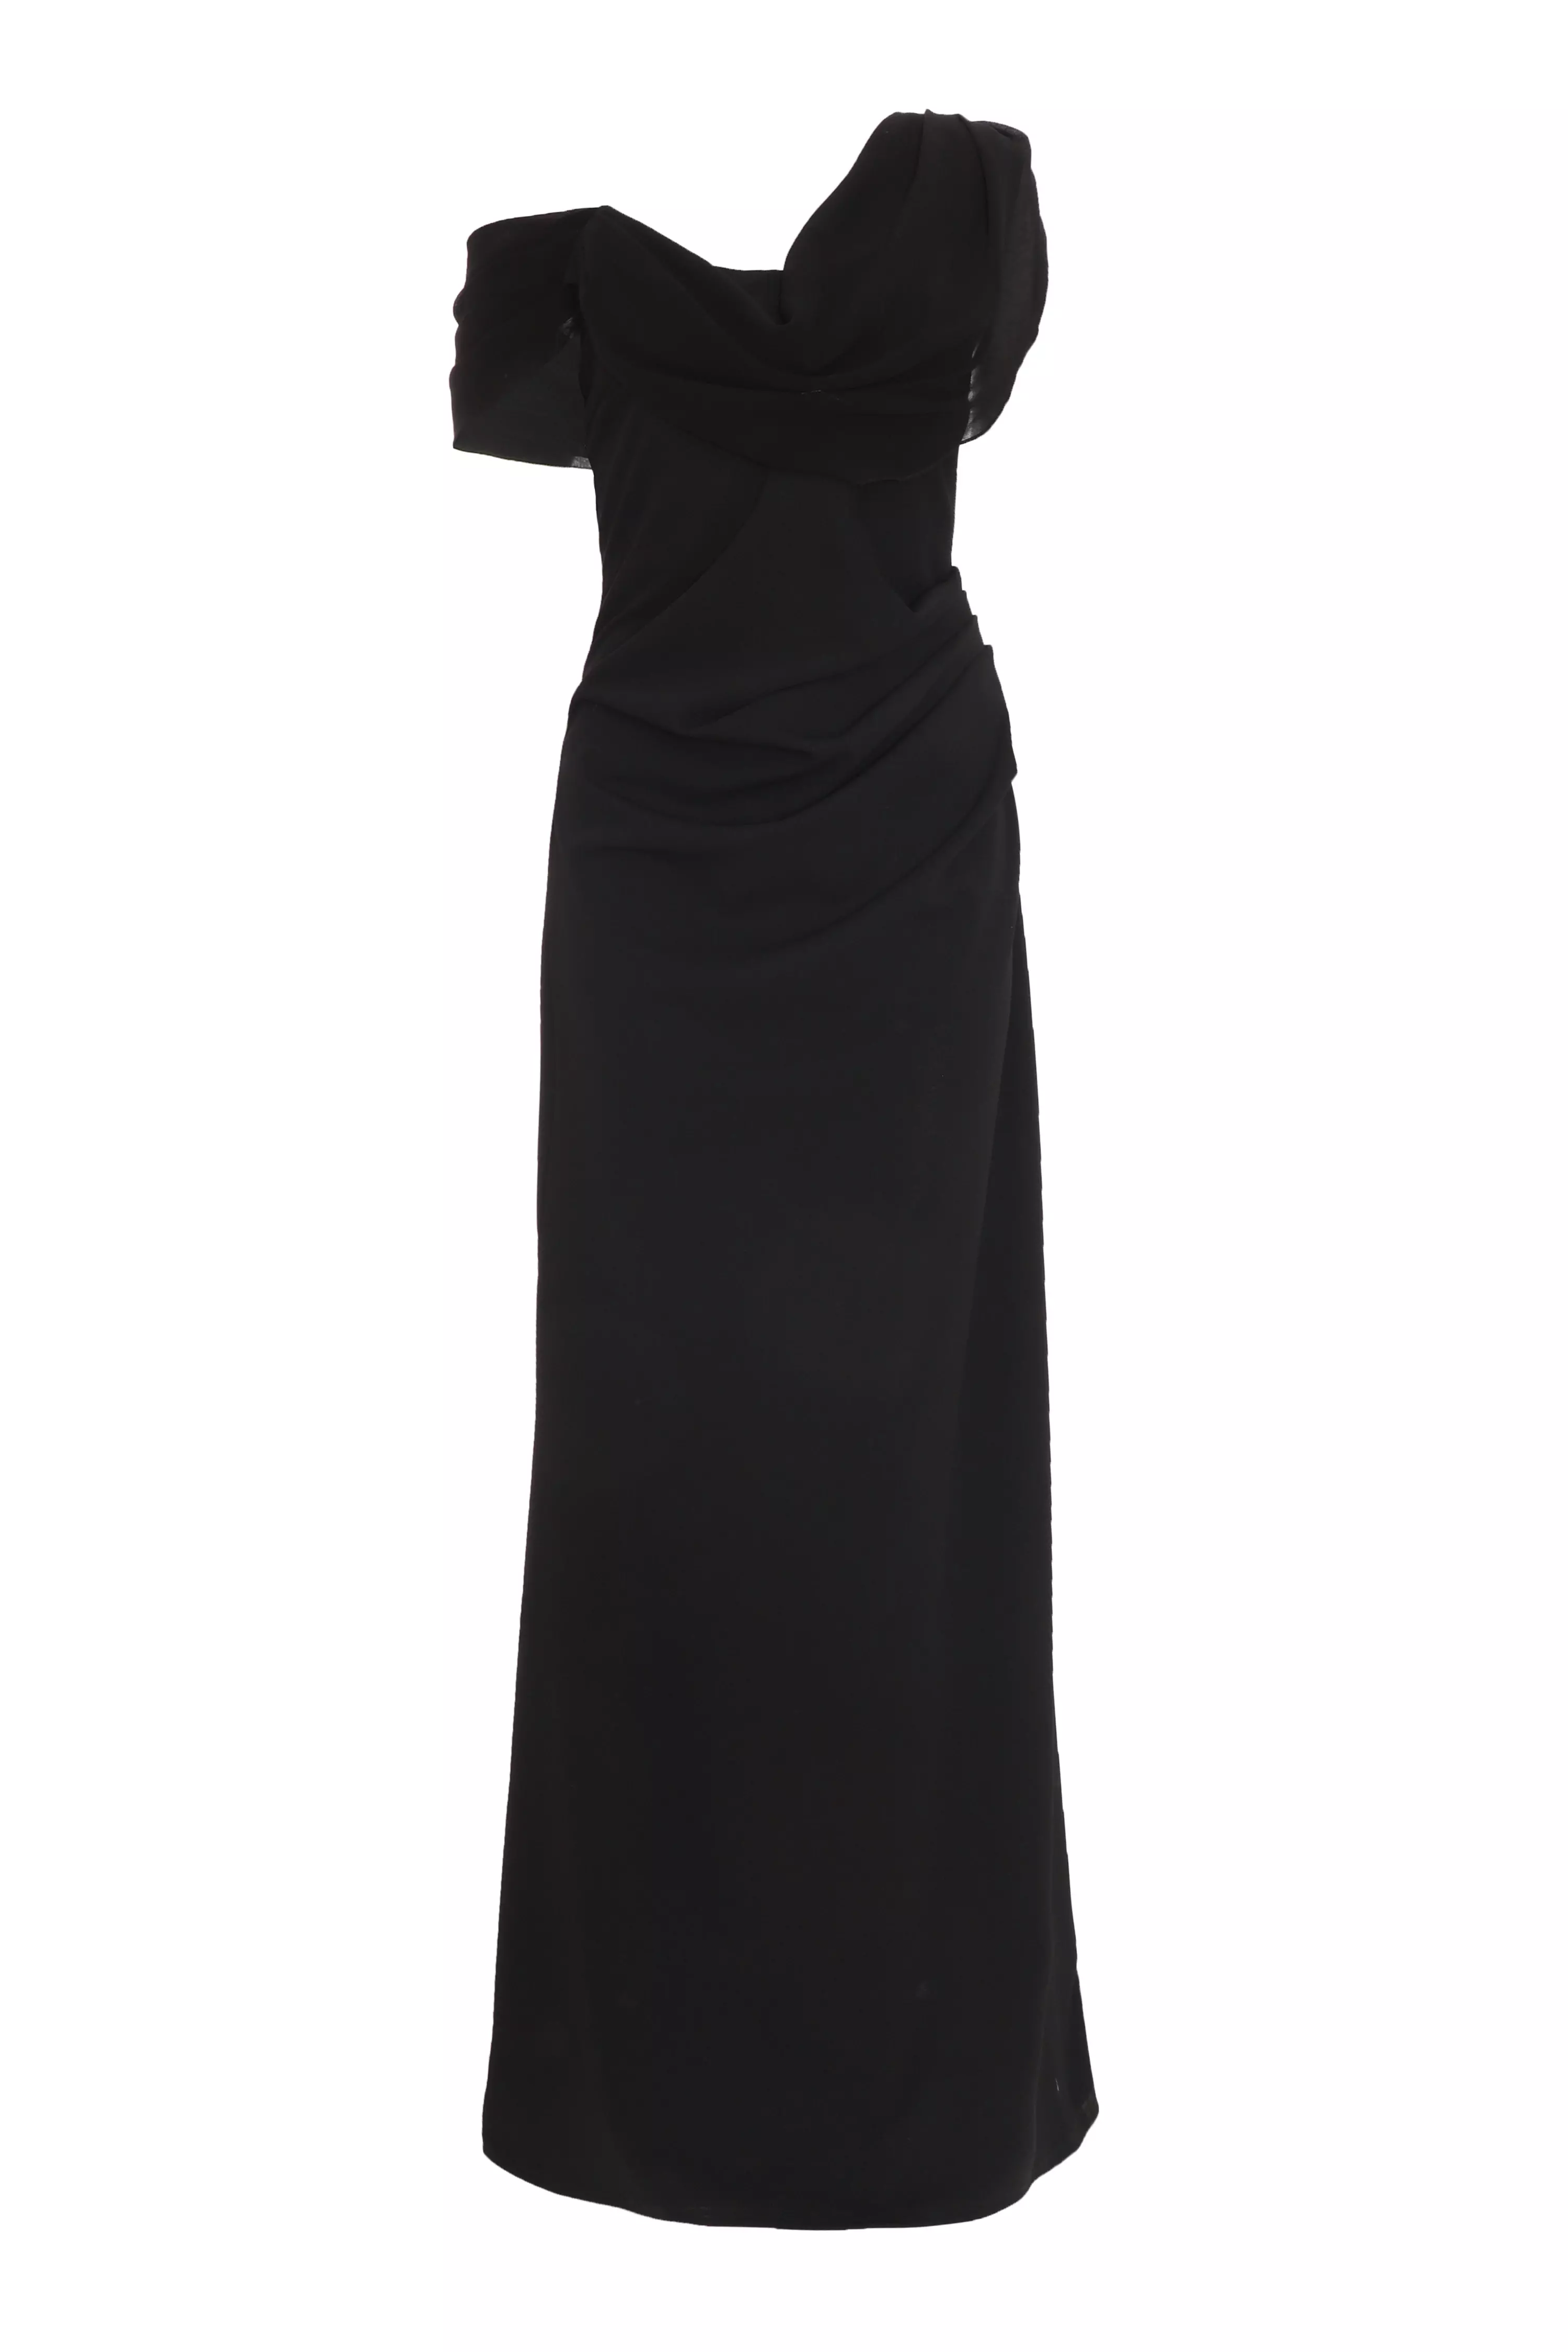 Black Asymmetric Cowl Neck Maxi Dress